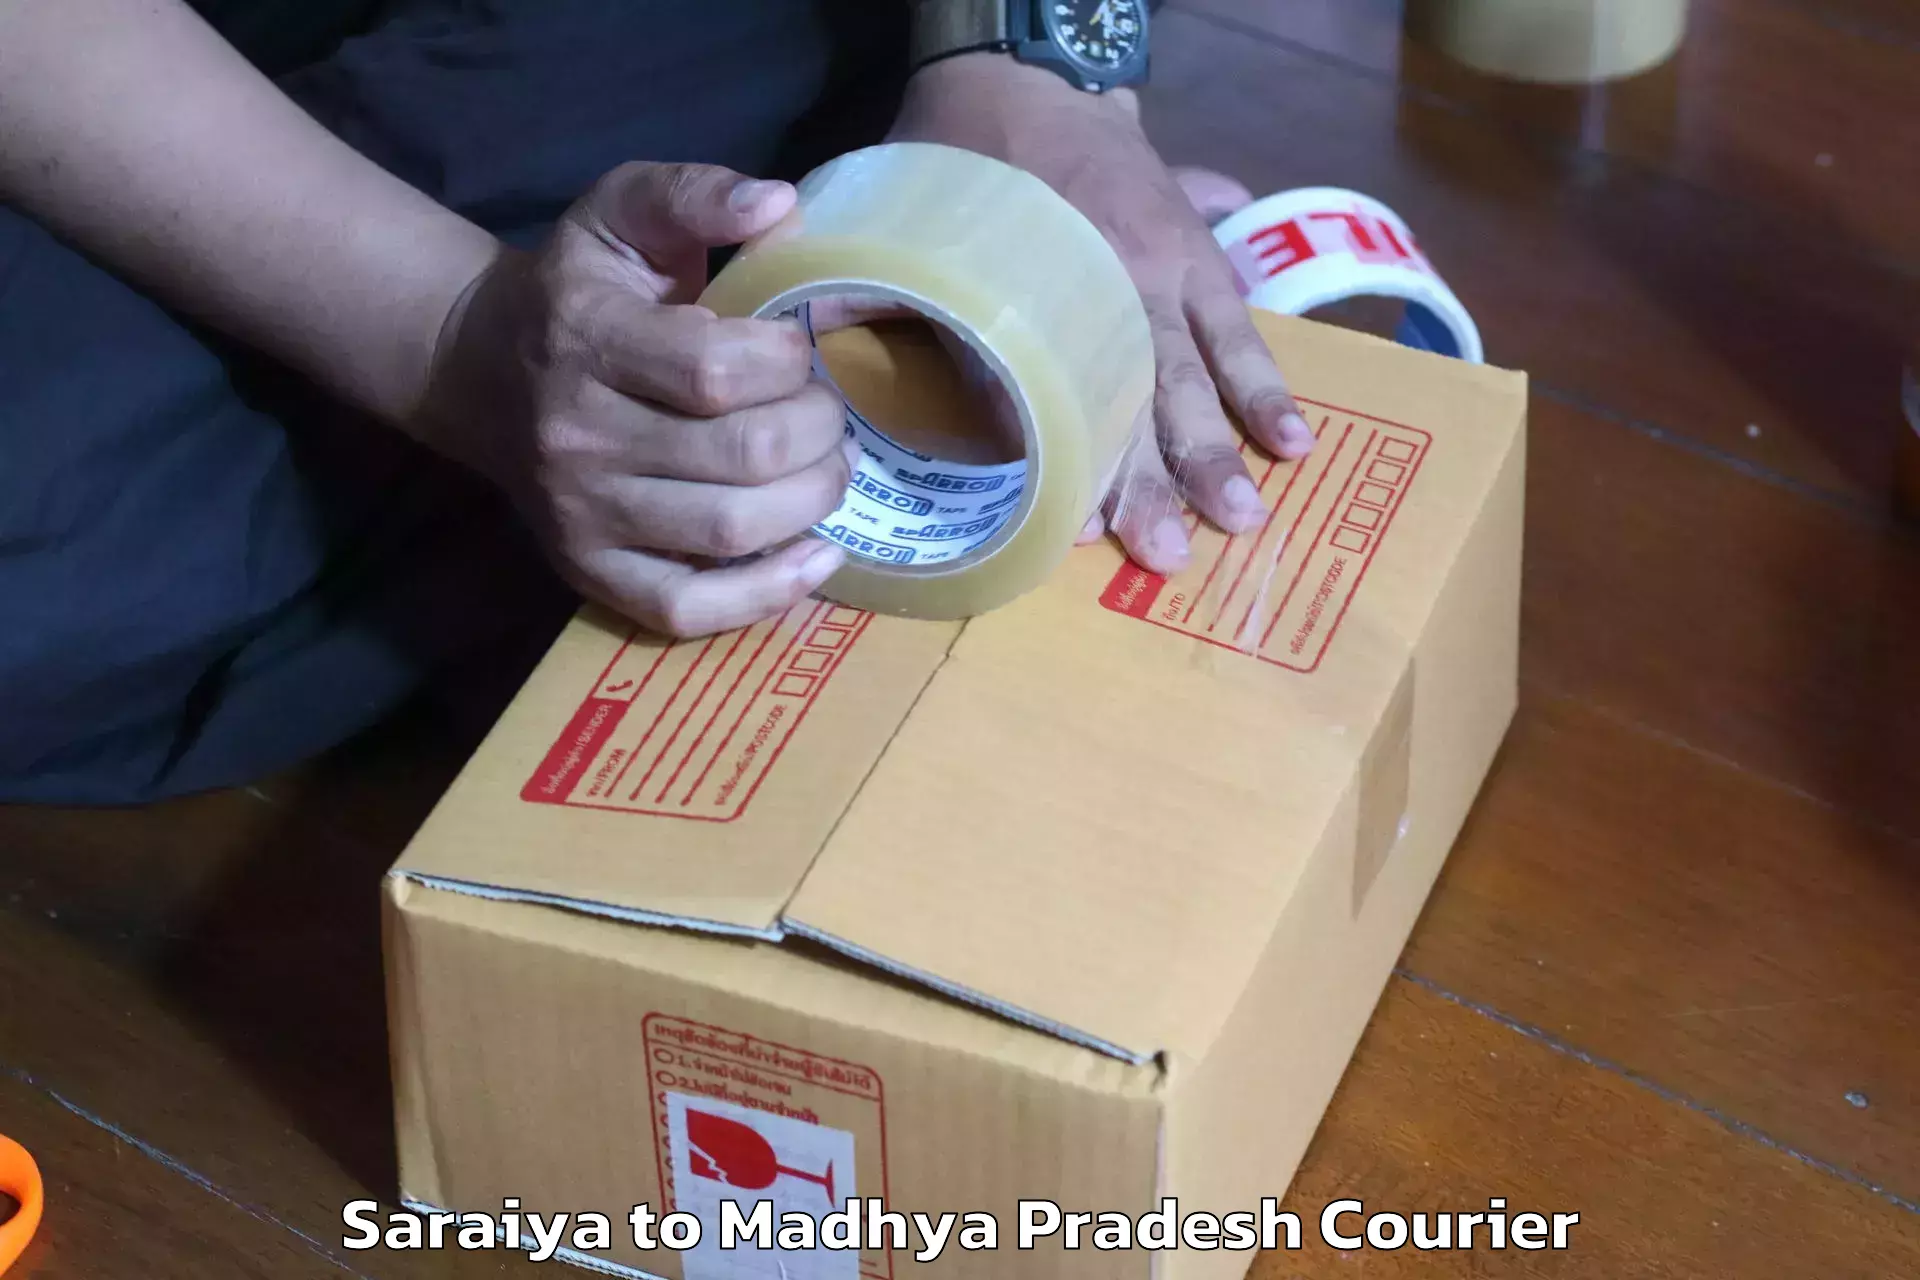 Furniture relocation experts Saraiya to Gadarwara